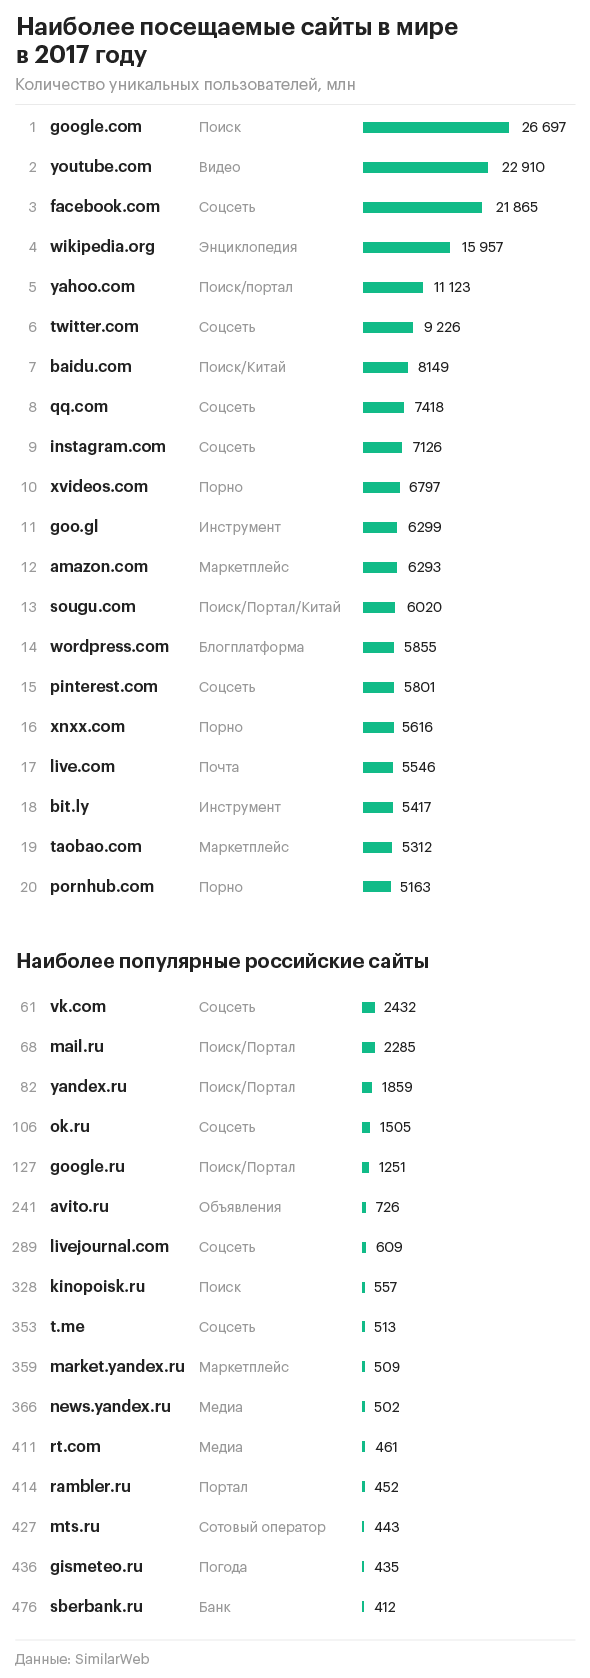 3 российских сайта вошли в сотню самых популярных в мире